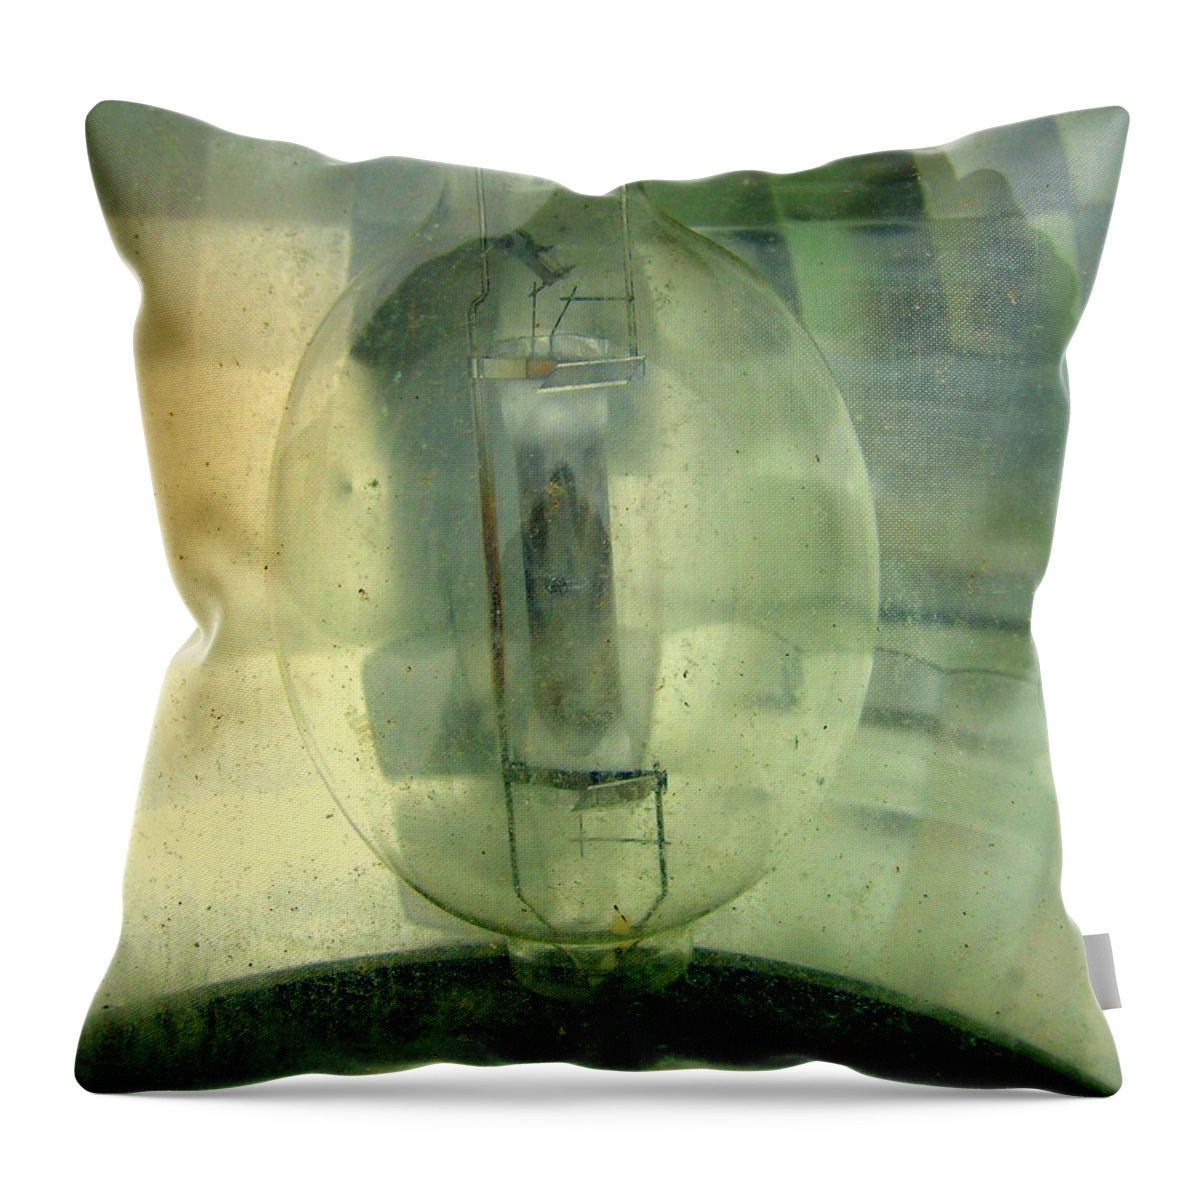 Abstract Throw Pillow featuring the photograph Green Lantern by Matt Cegelis